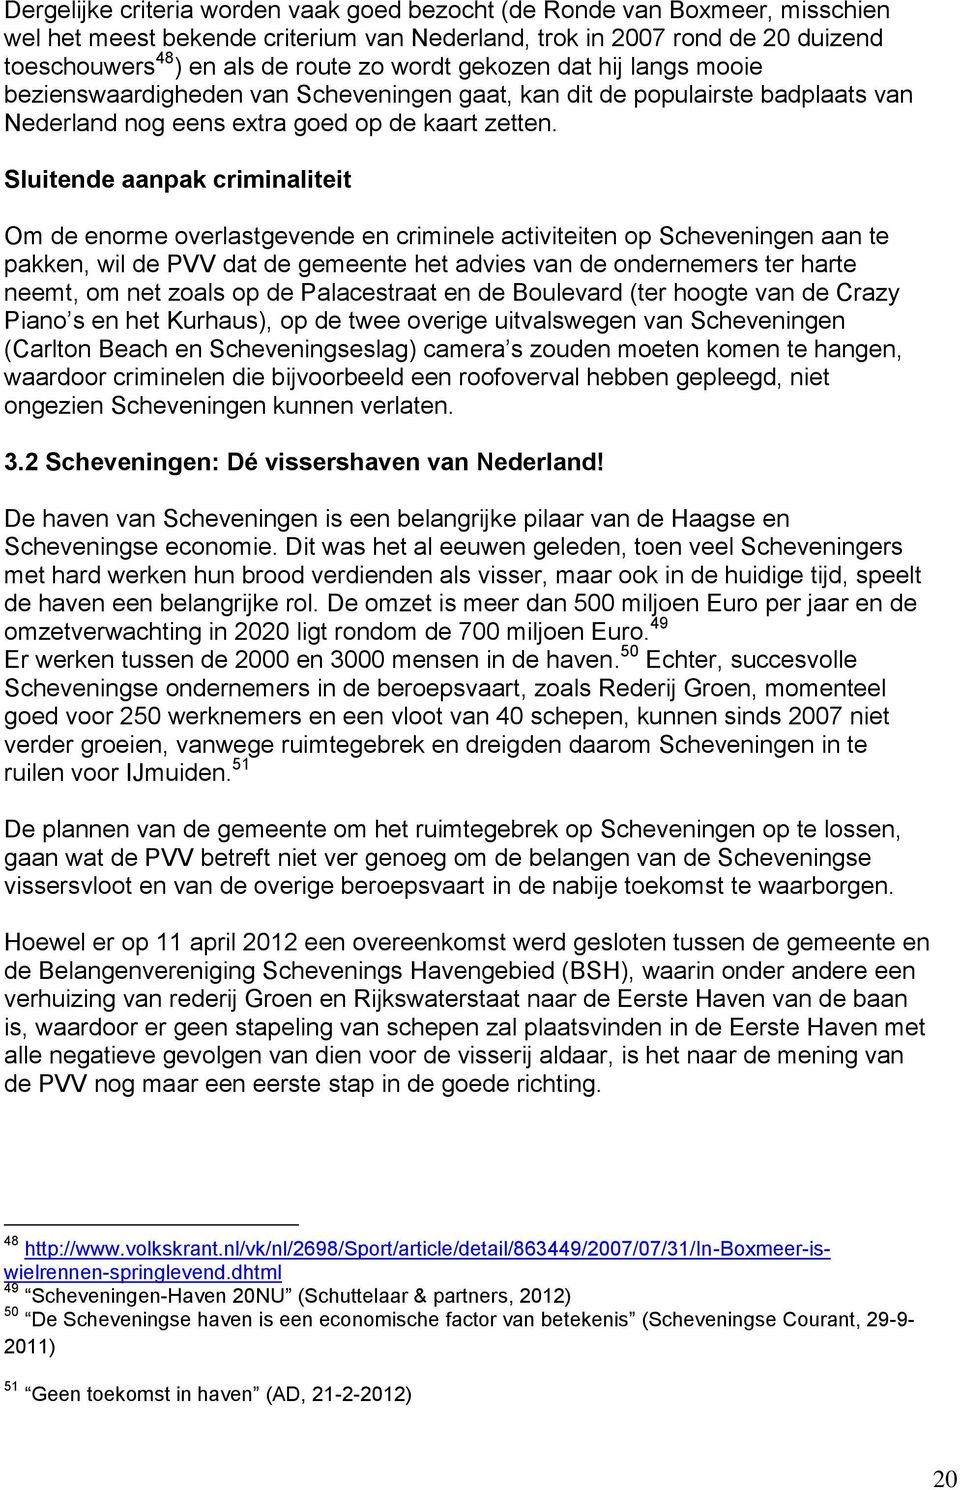 Sluitende aanpak criminaliteit Om de enorme overlastgevende en criminele activiteiten op Scheveningen aan te pakken, wil de PVV dat de gemeente het advies van de ondernemers ter harte neemt, om net